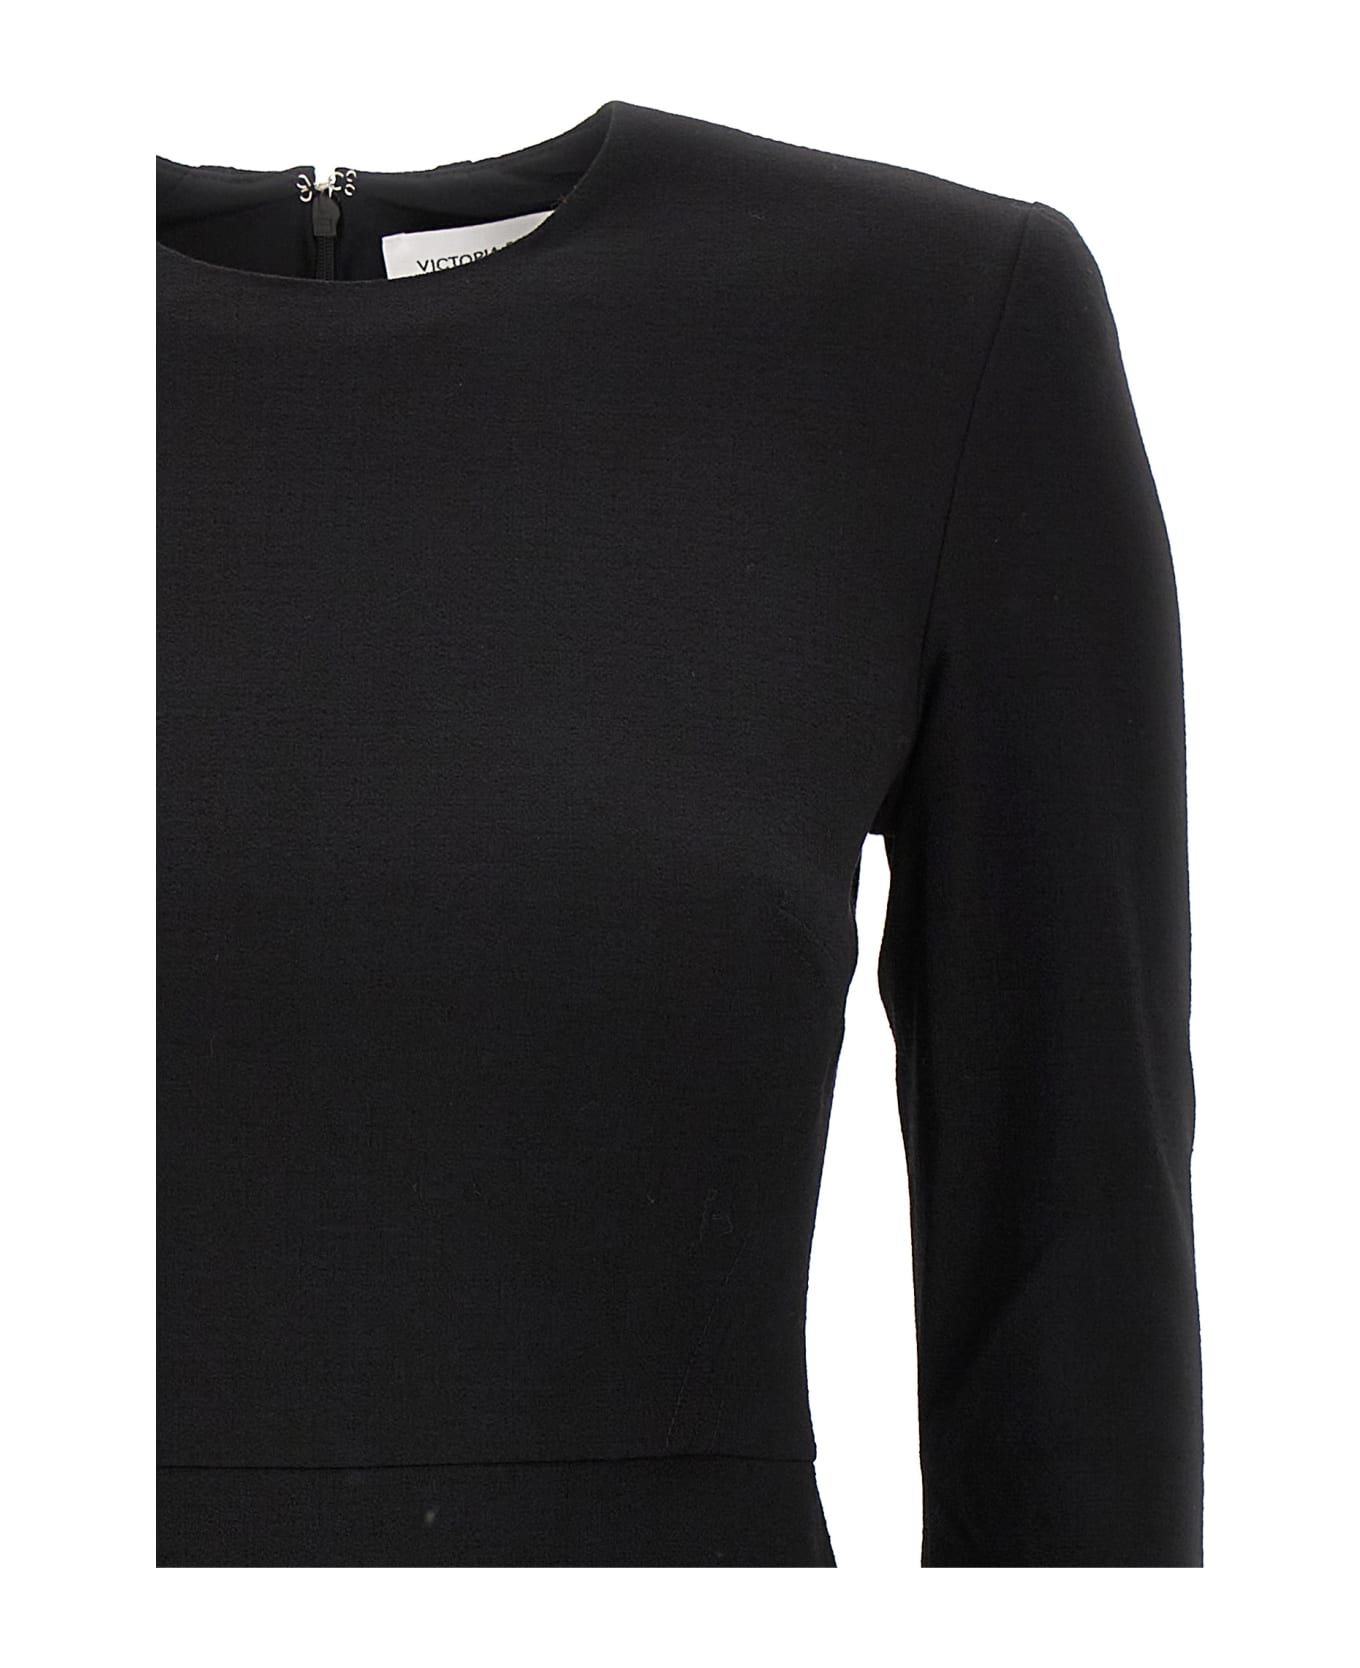 Victoria Beckham Midi Dress - Black  